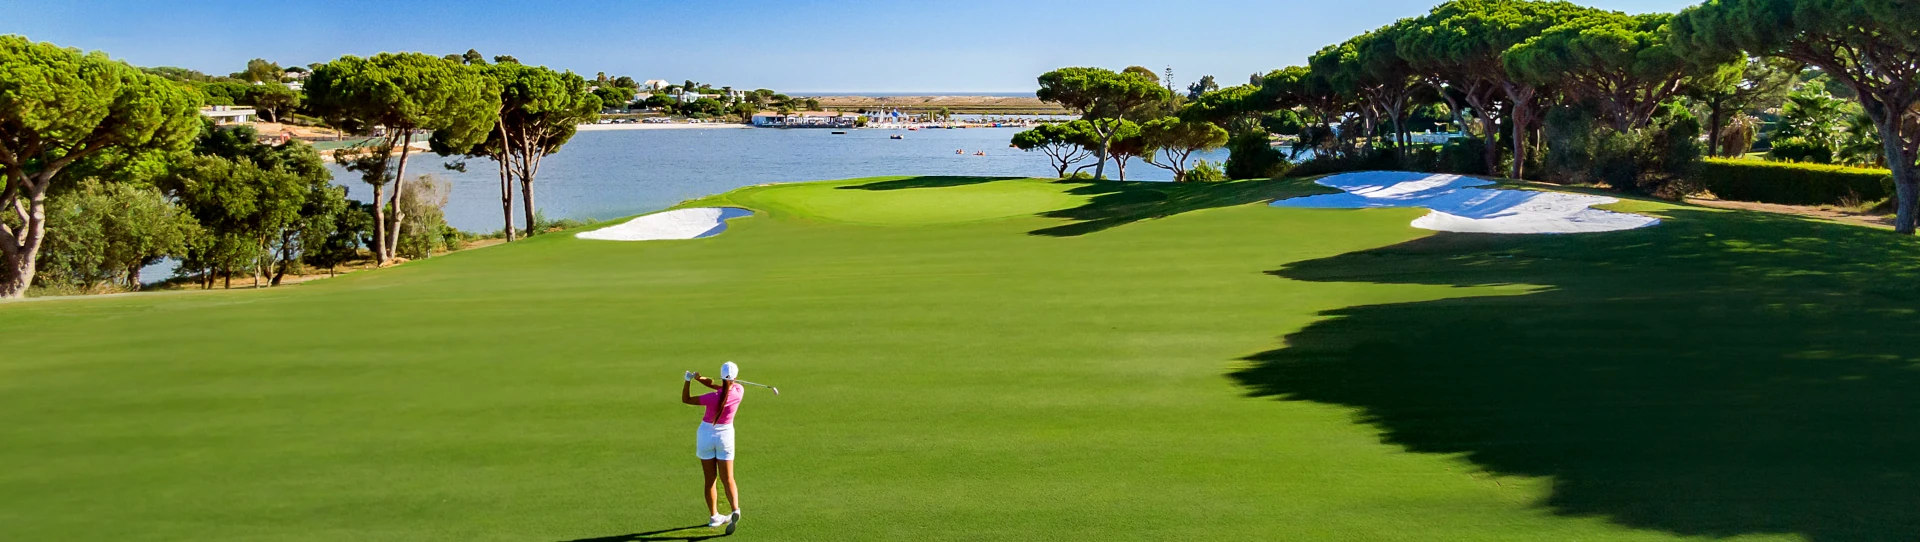 Portugal golf courses - Quinta do Lago South - Photo 1